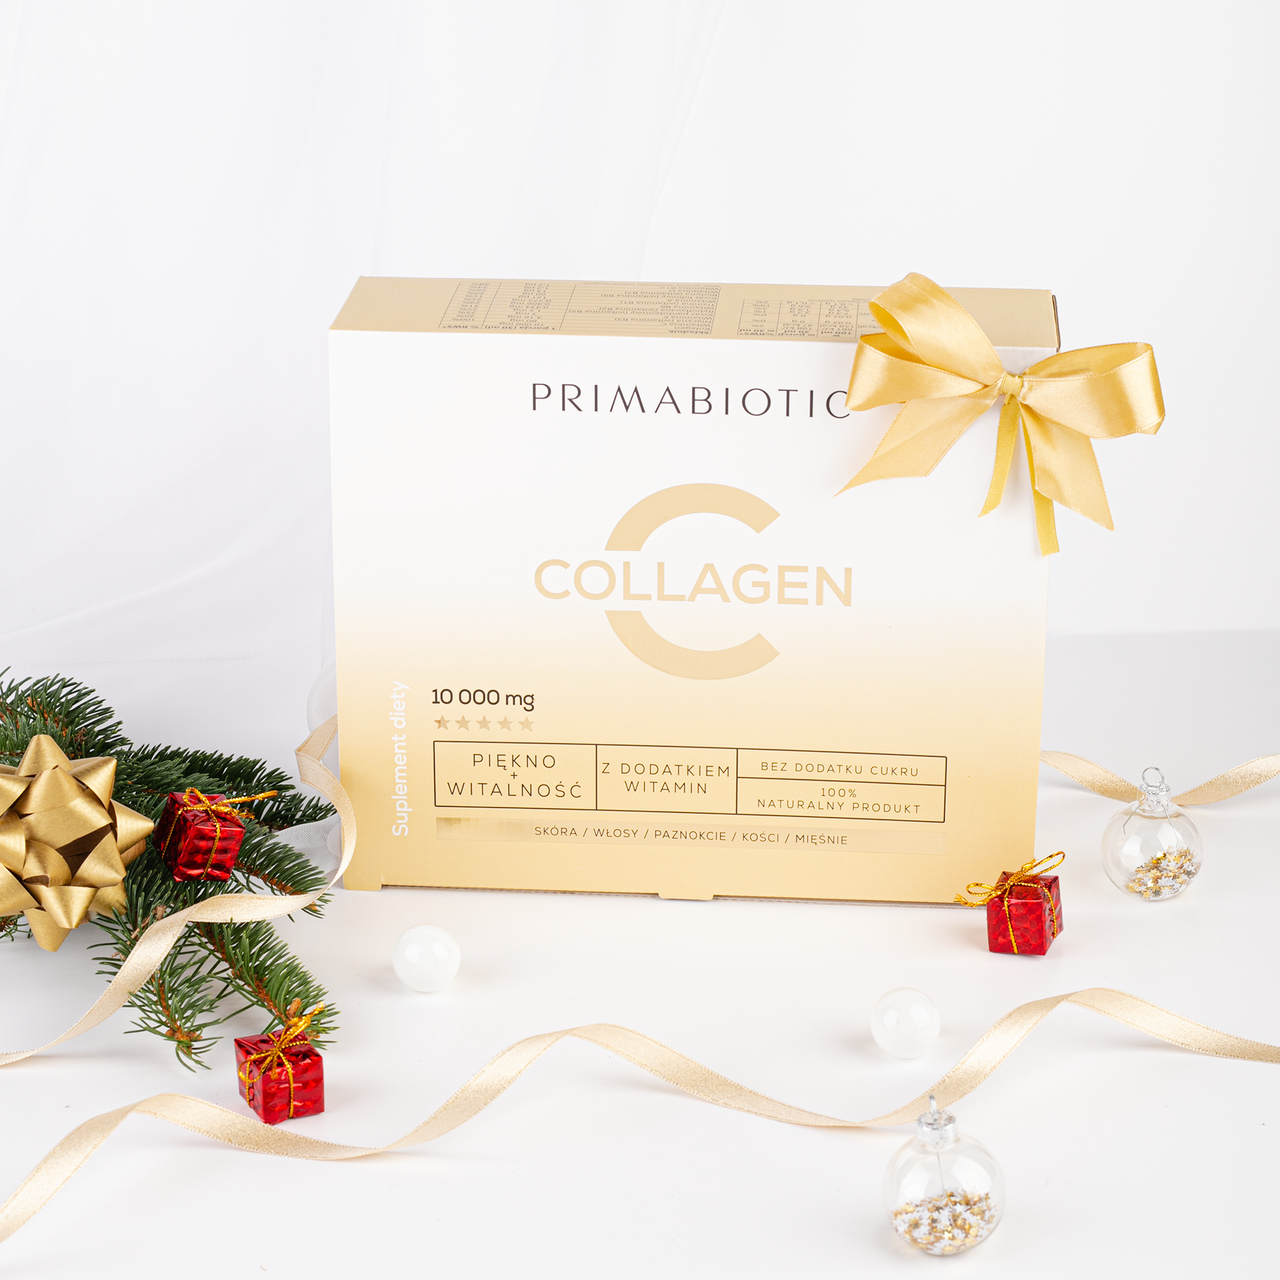 primabiotic collagen